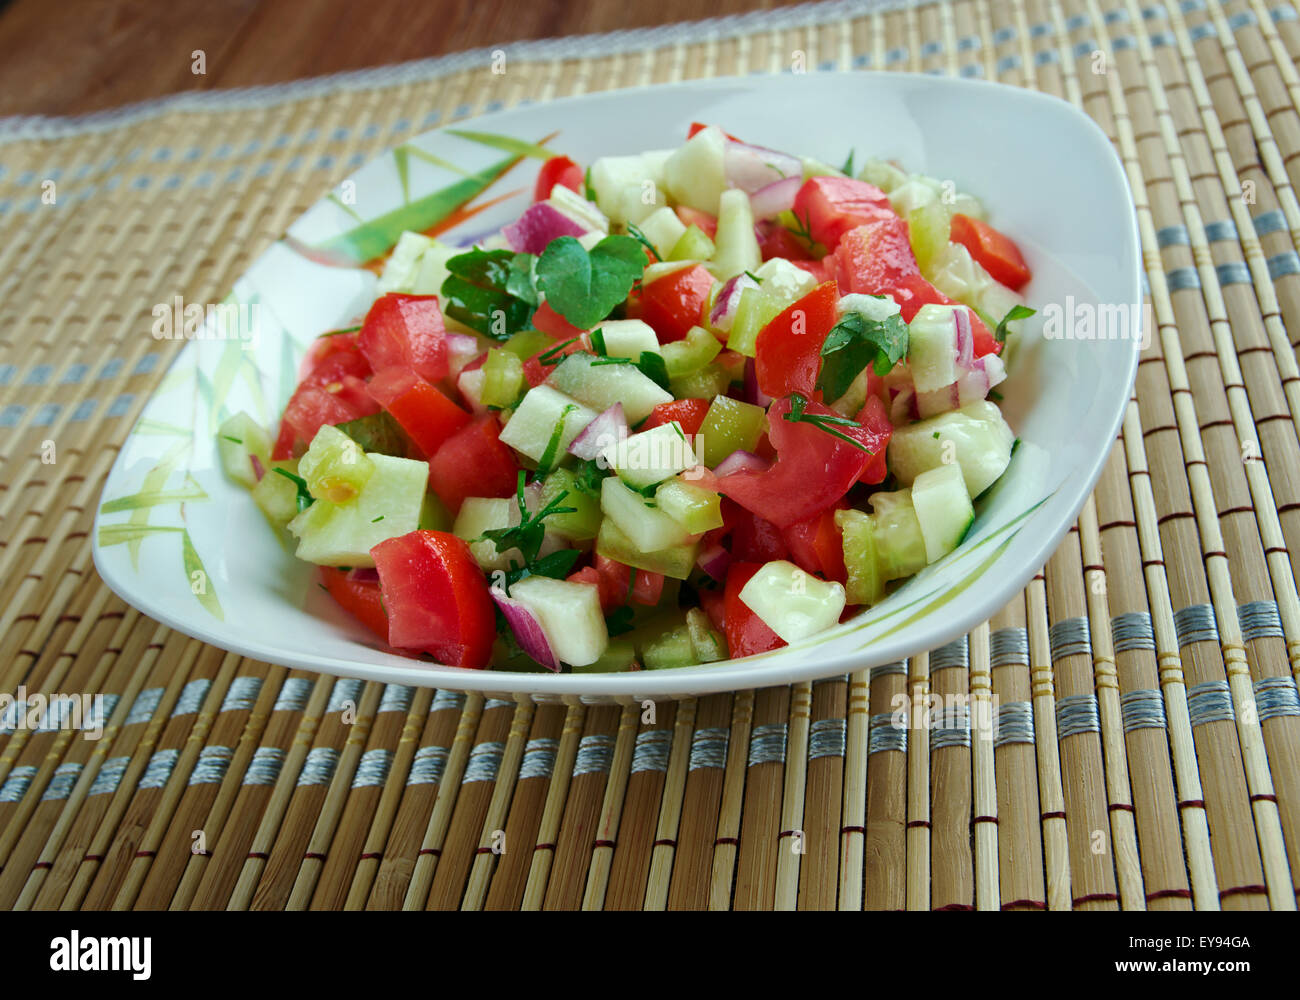 Kachumbari - tomate fraîche et l'oignon salade. populaire dans les cuisines de région des Grands Lacs africains. Banque D'Images